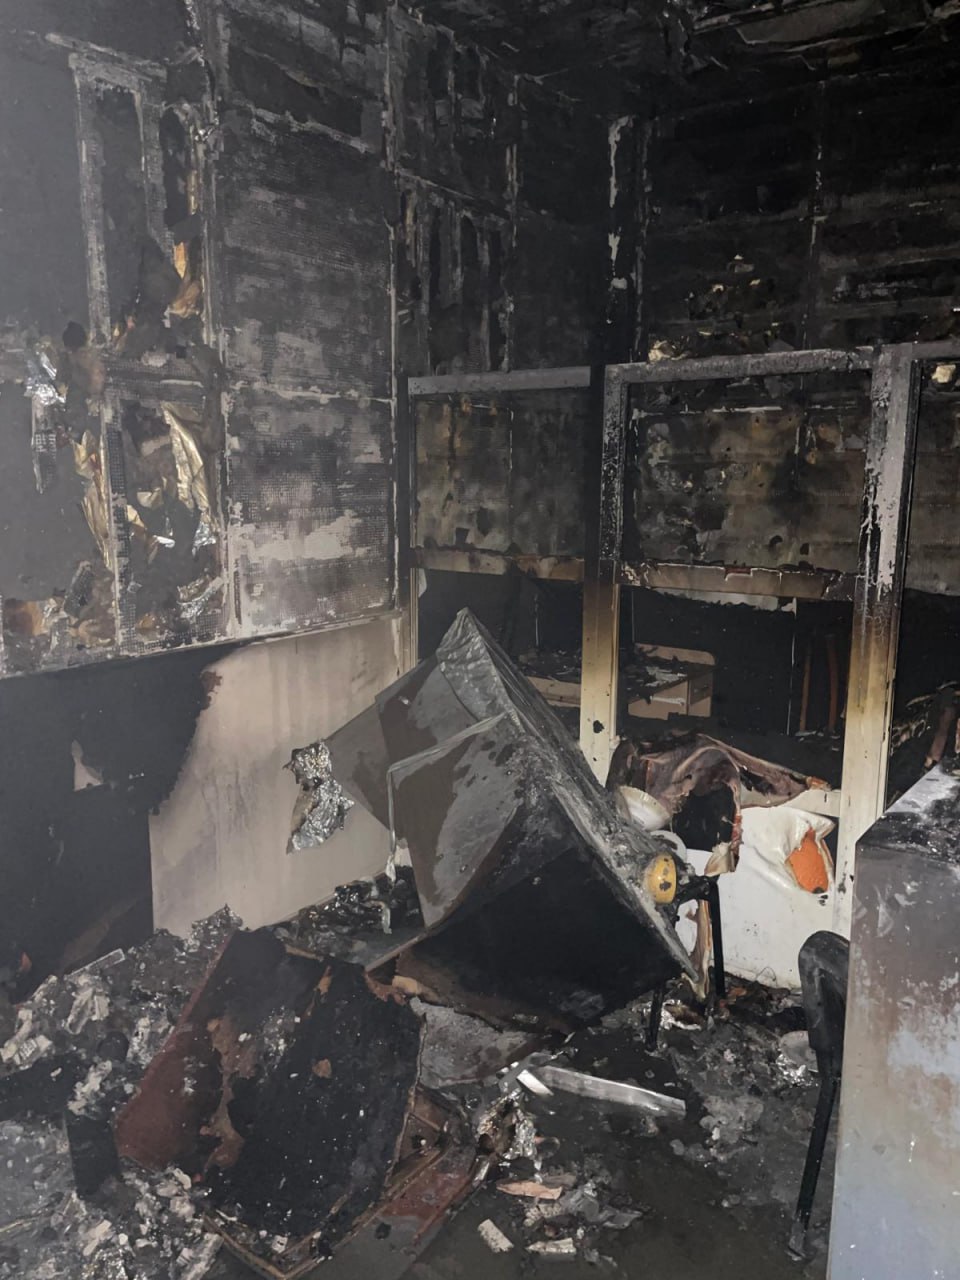 (ФОТО, ВИДЕО) В Доме радио в Кишиневе произошел пожар